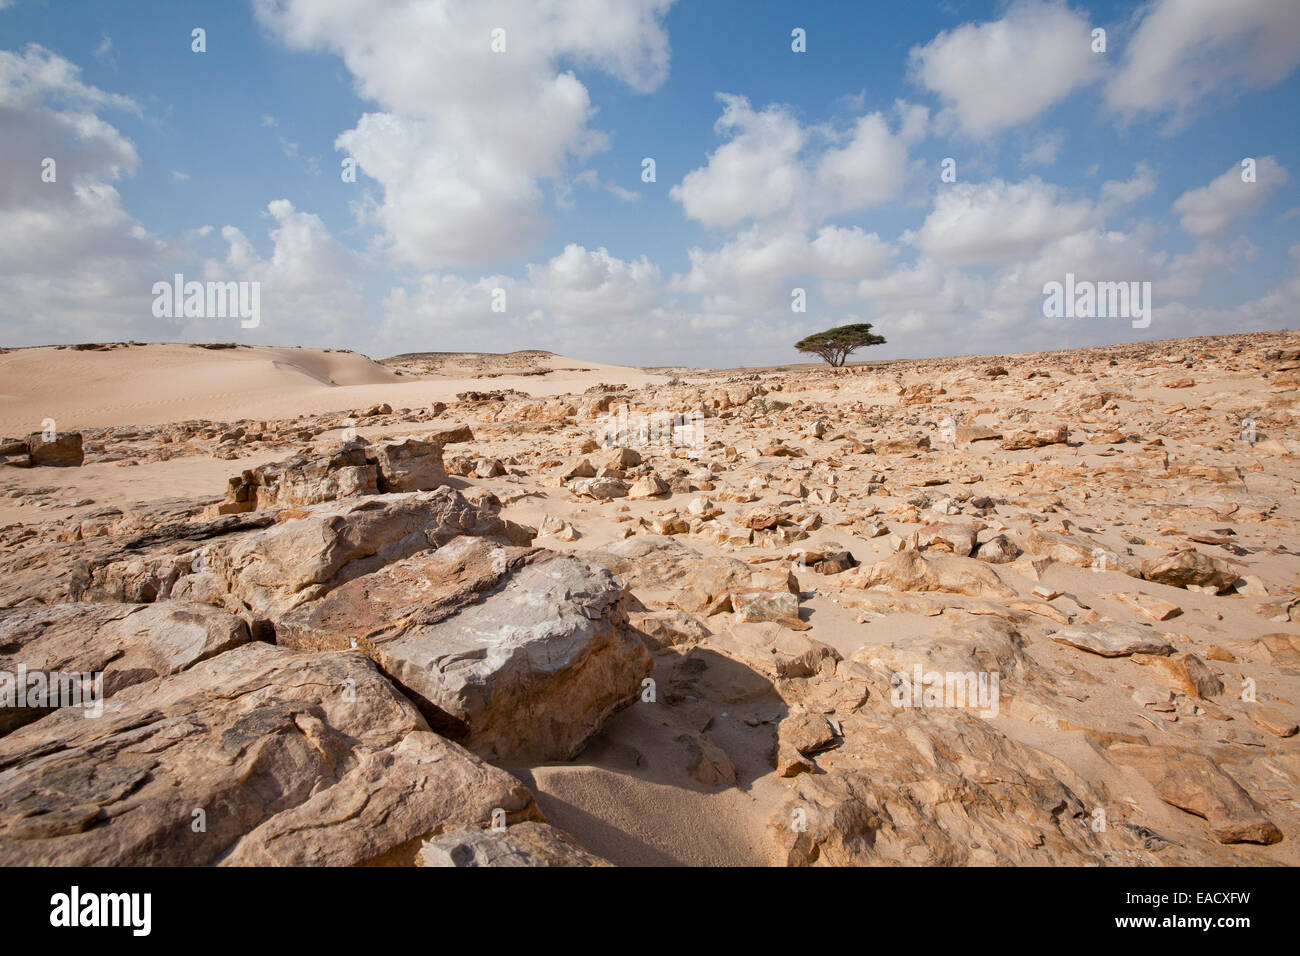 Desert landscape, Oman Stock Photo